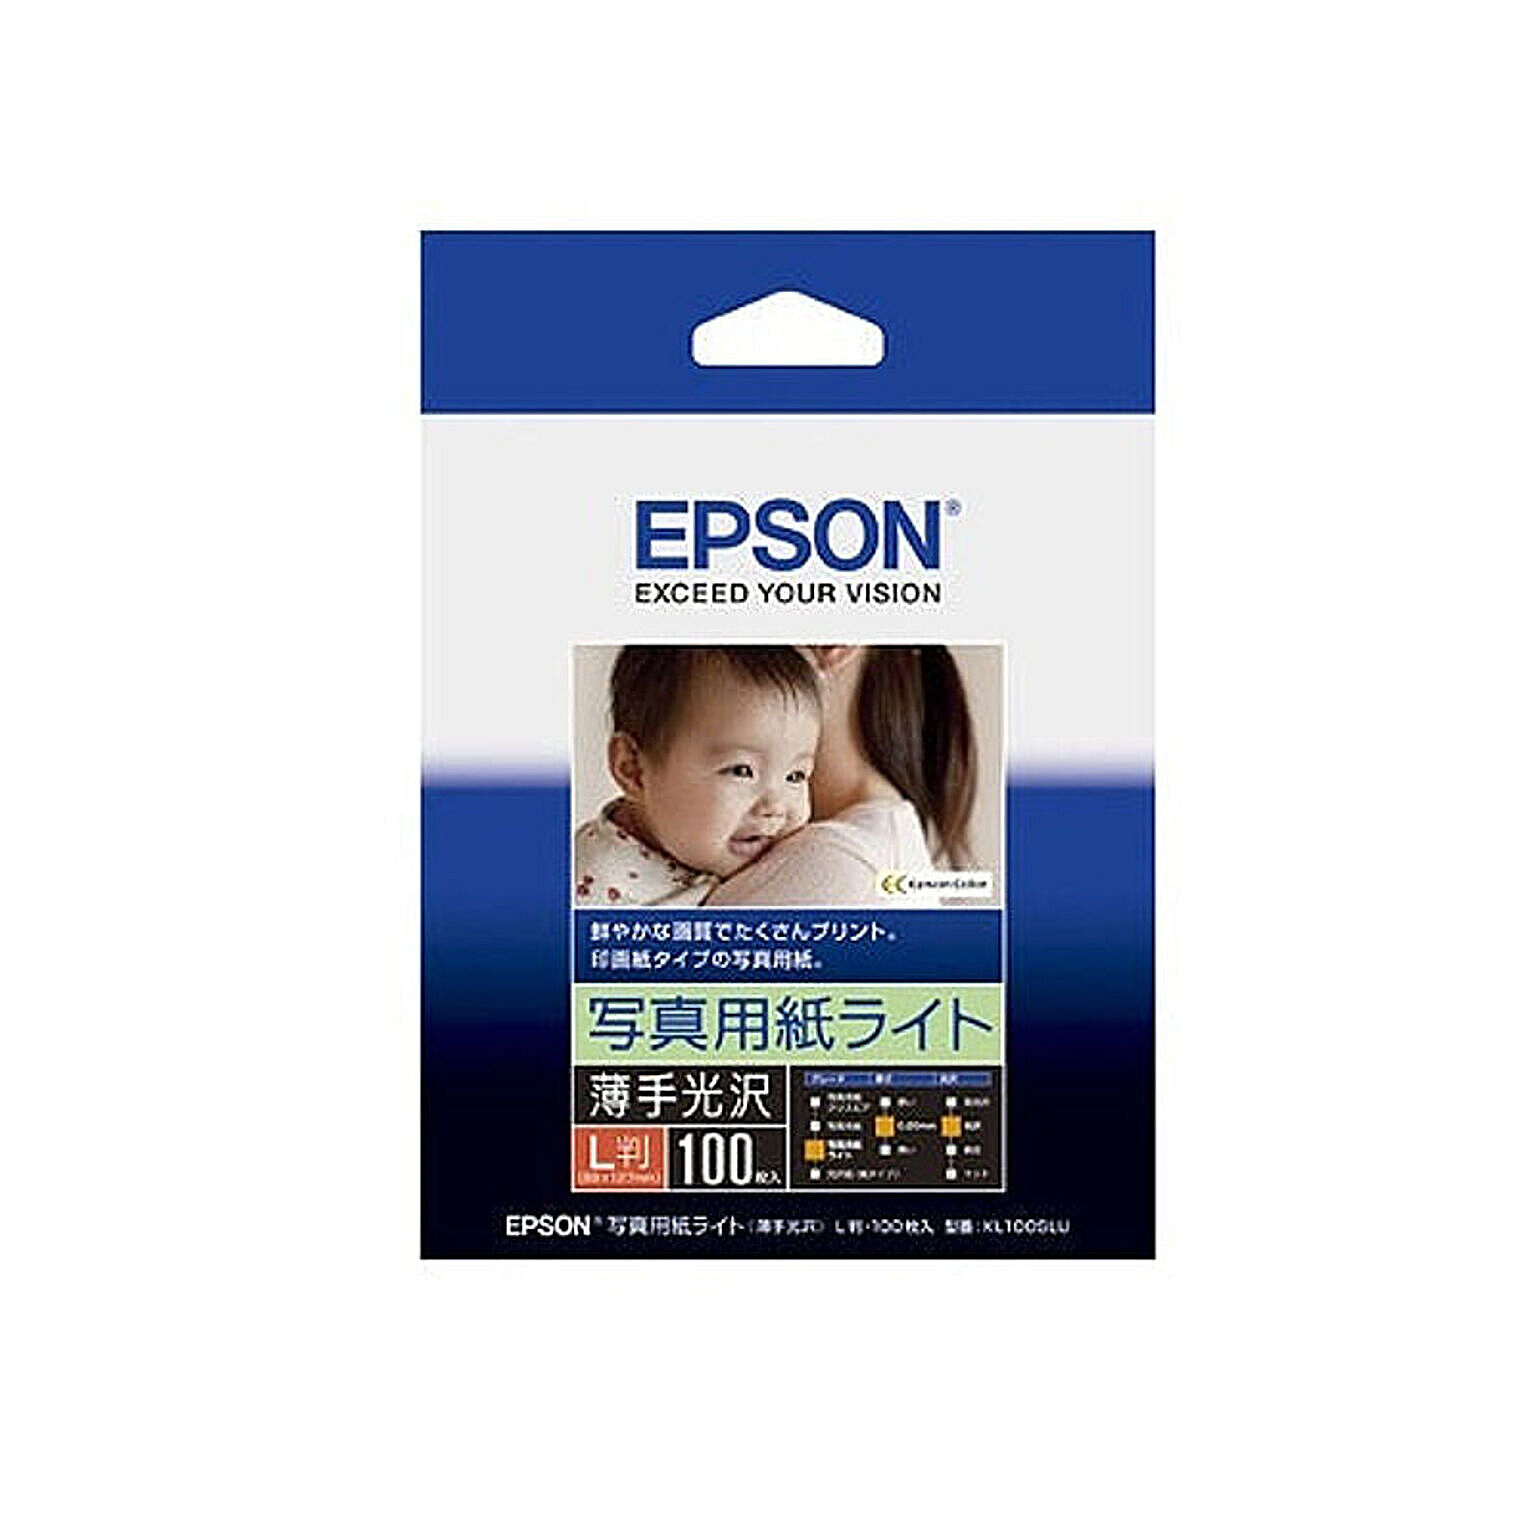 エプソン EPSON 写真用紙ライト 薄手光沢L判 100枚 KL100SLU 管理No. 4988617158207 通販  RoomClipショッピング